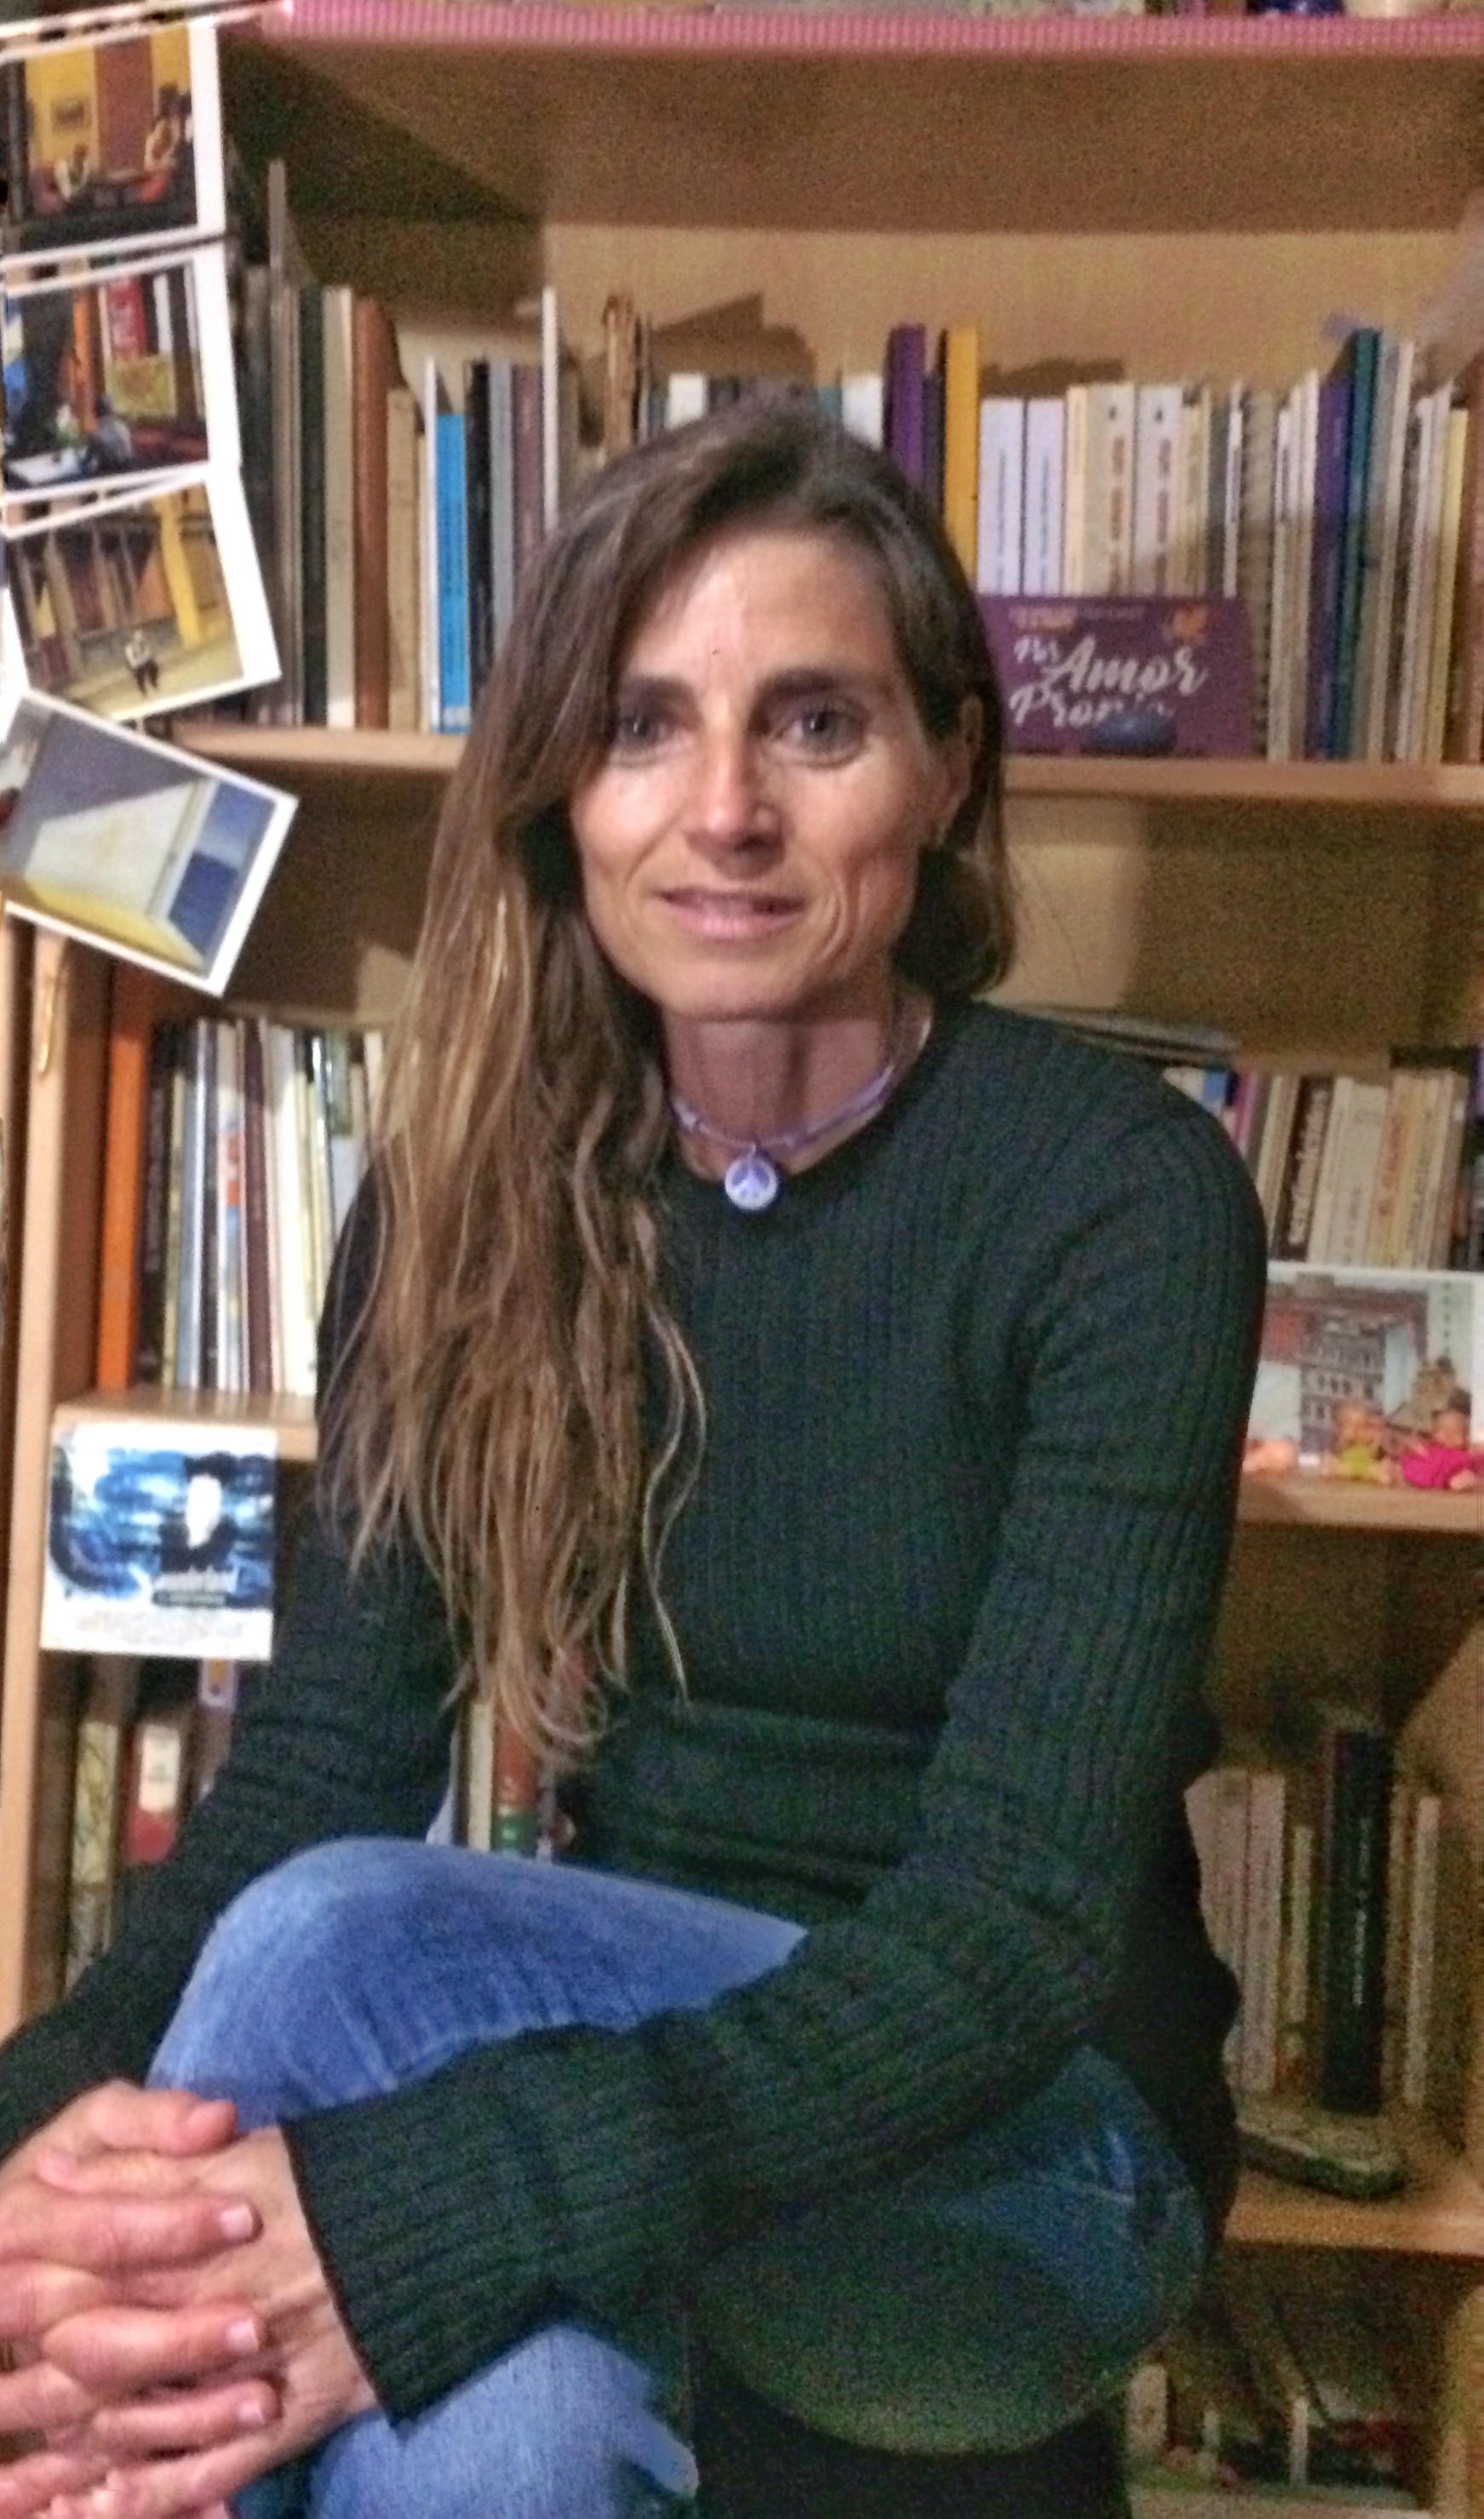 El escobillon » Blog Archive » Blanca Hernández Quintana: “La poesía de ...